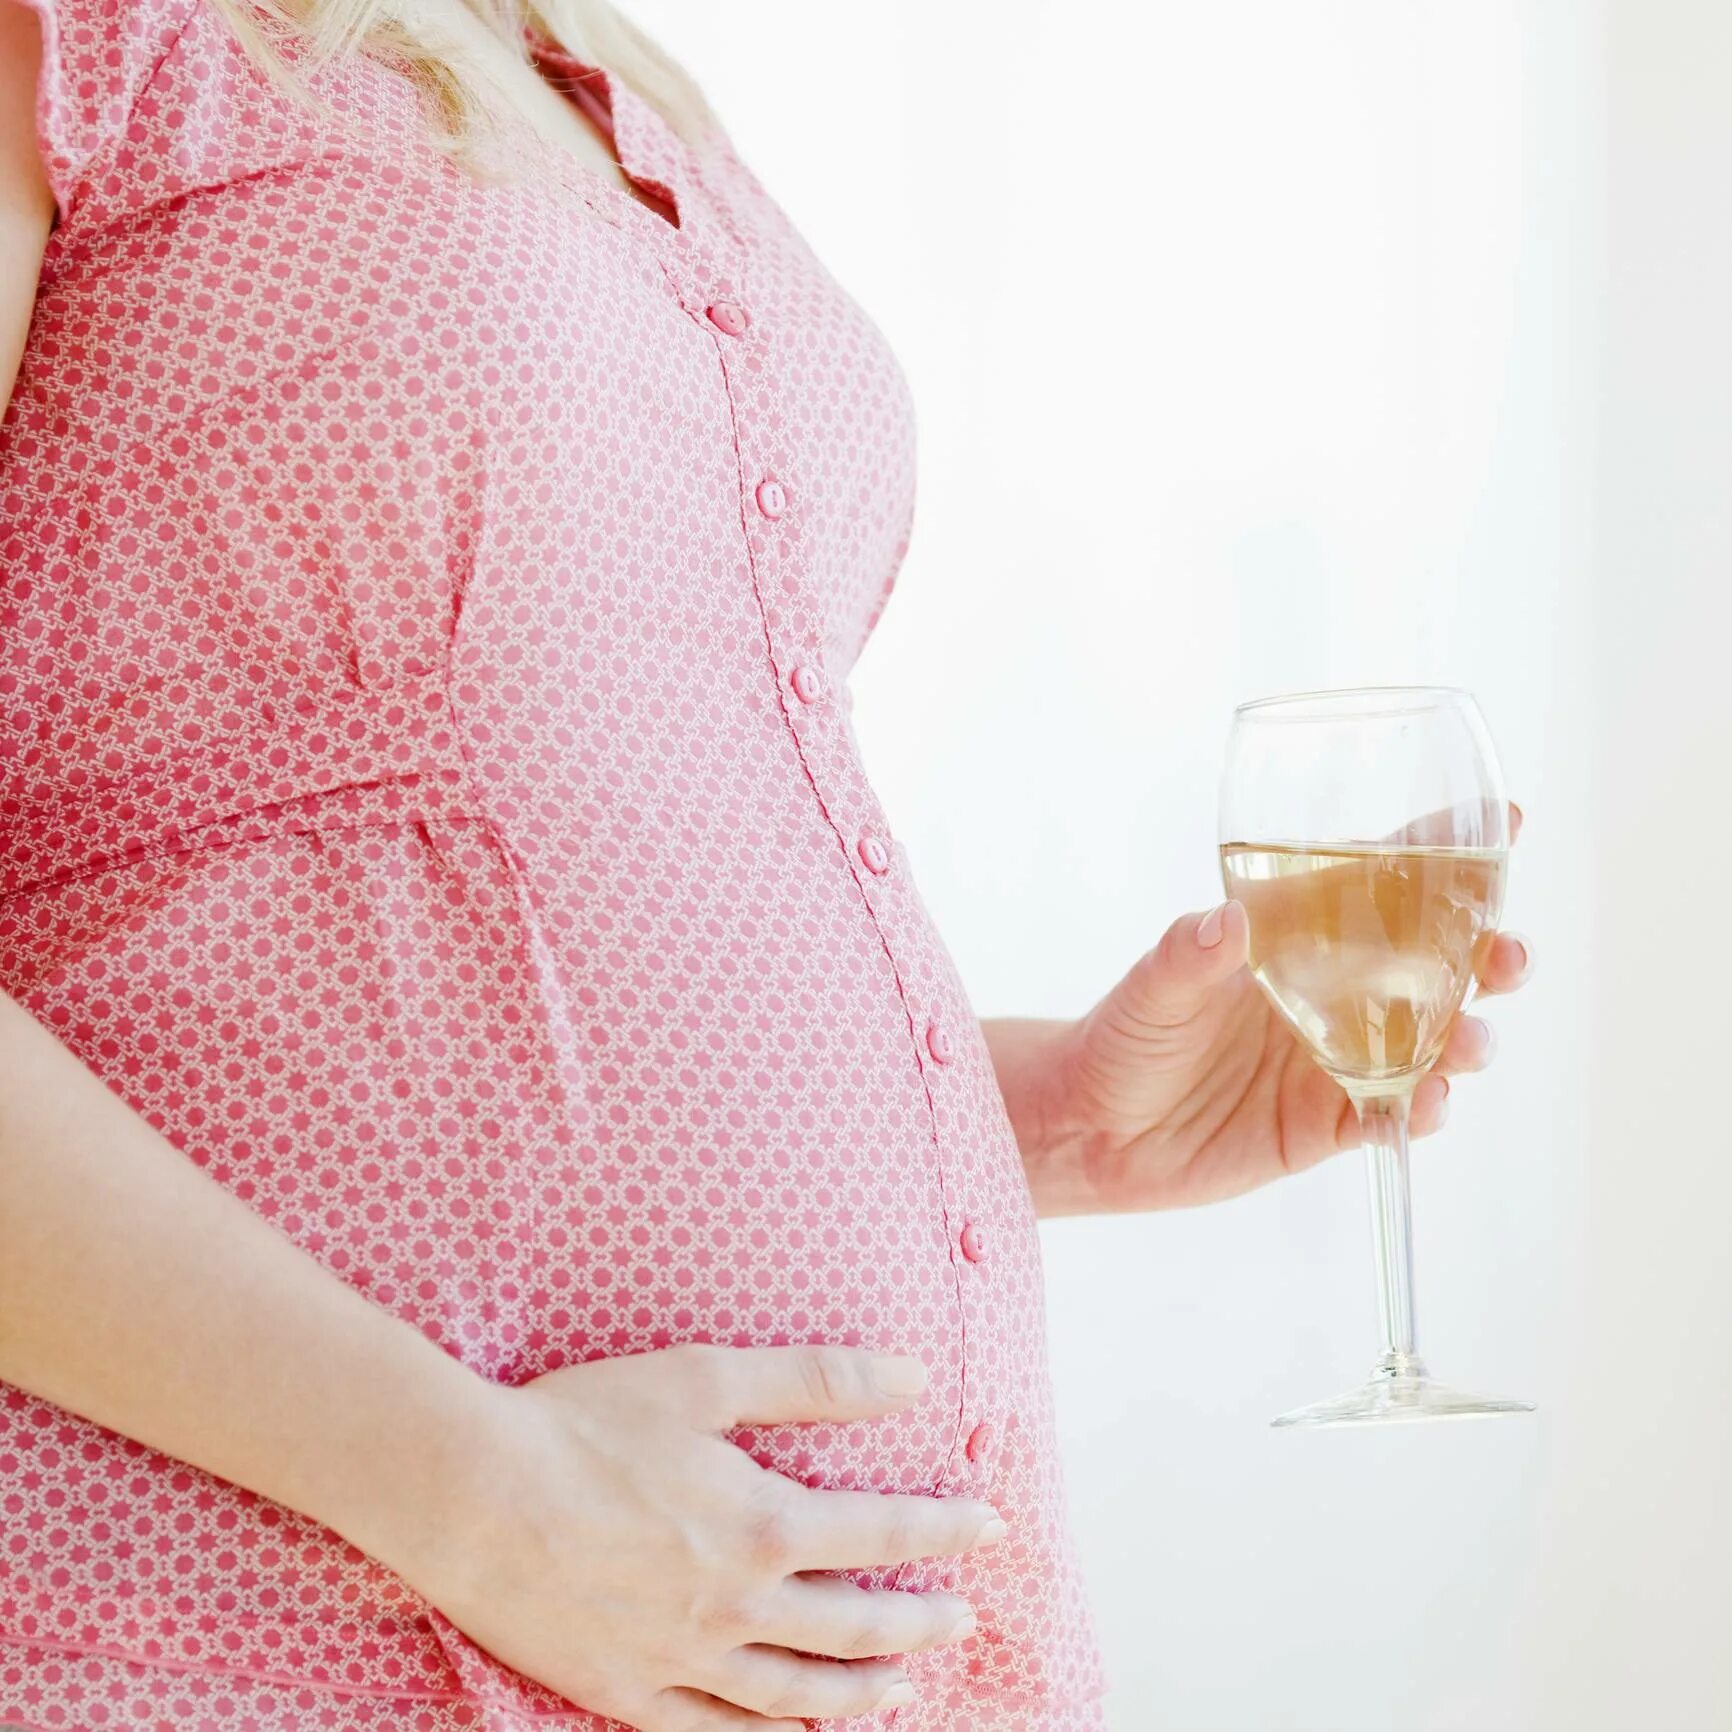 Пьющие беременные после. Беременность. Алкоголь и беременность. Вино для беременных. Пьющие беременные женщины.